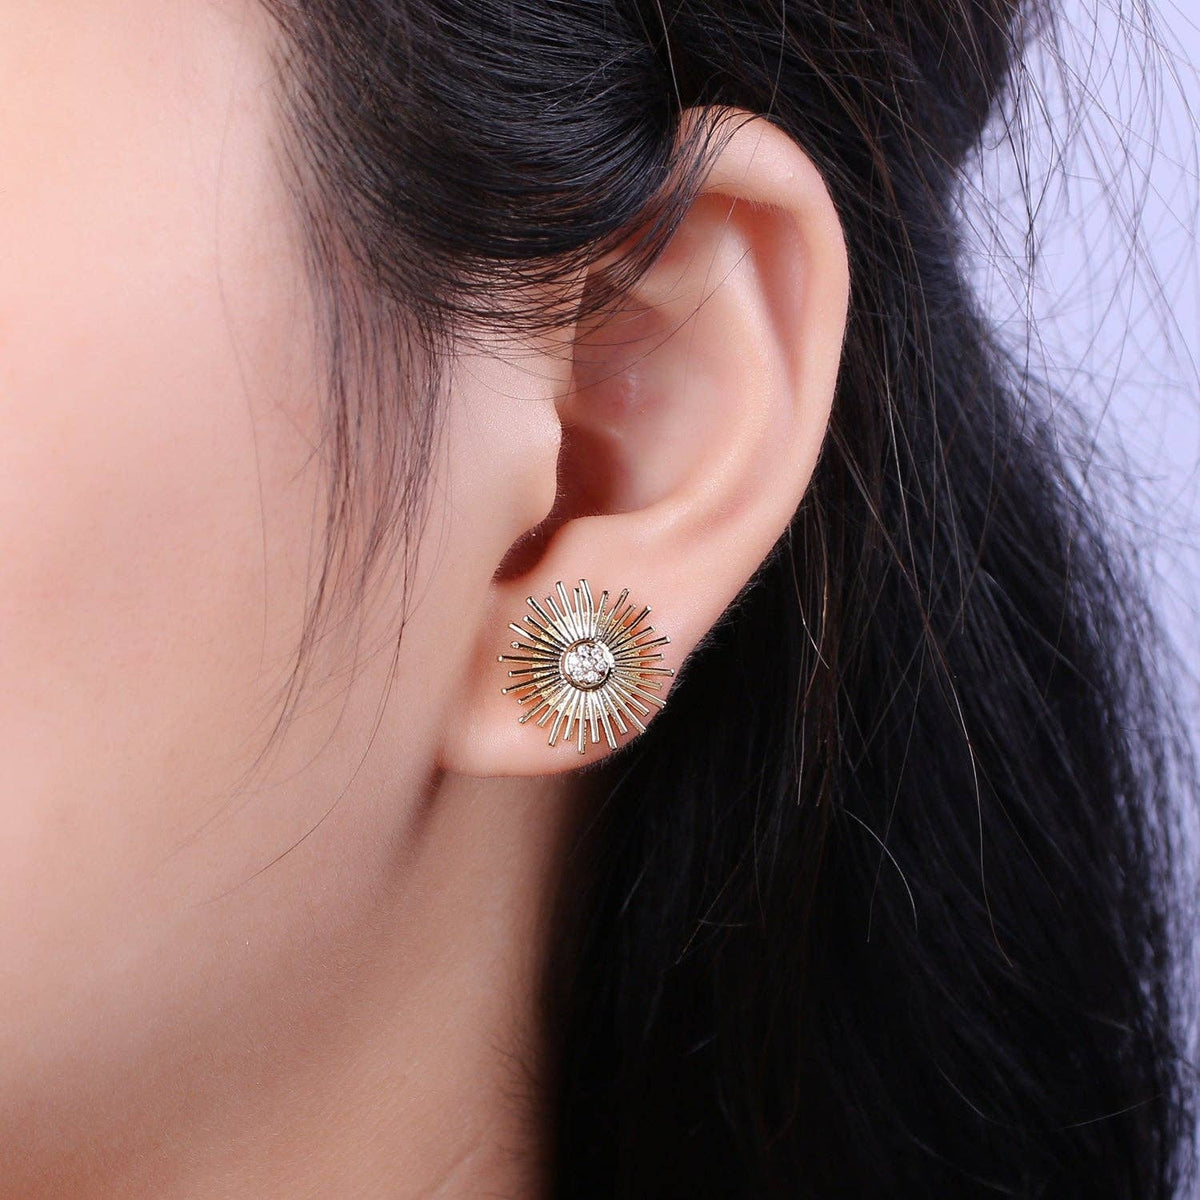 Aim Eternal - Dainty Sun earrings ?€? sunburst stud earrings ?€? gold sun earrings ?€? gold stud earrings ?€? Cz Everday earrings ?€? small earrings T234